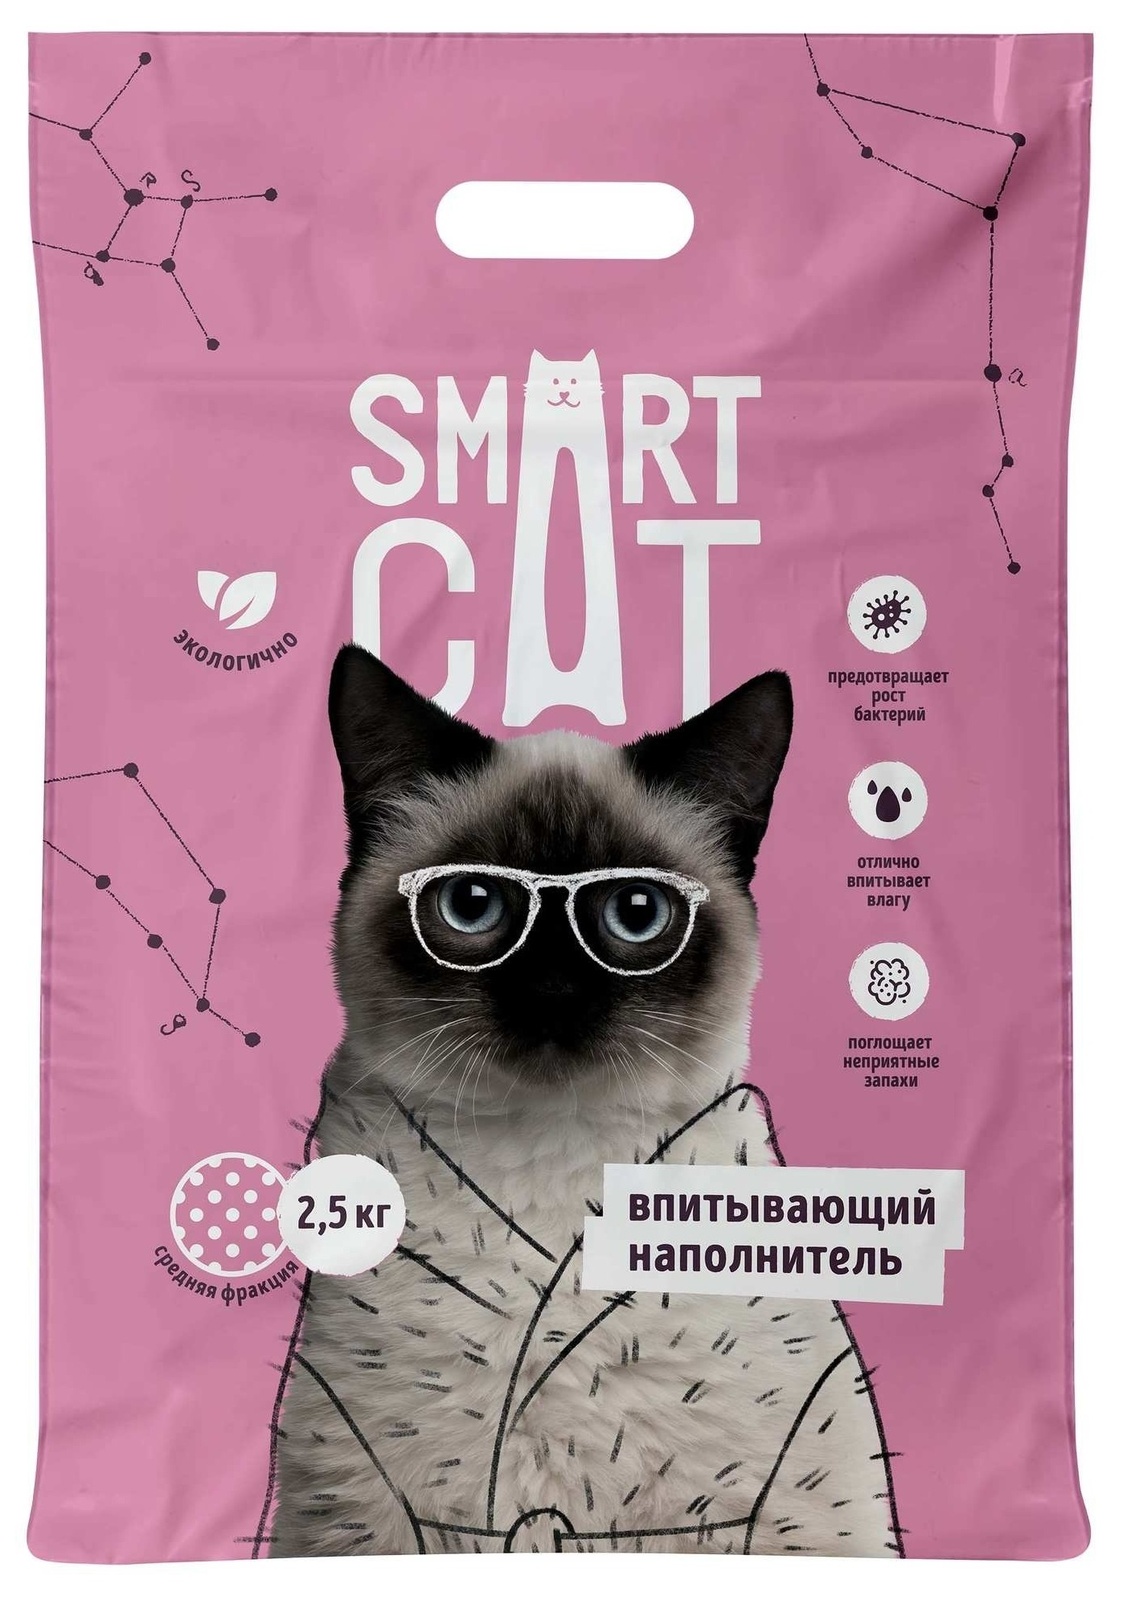 Smart Cat наполнитель Smart Cat наполнитель впитывающий наполнитель, средняя фракция (2,5 кг) впитывающий наполнитель smart cat древесный 4 1л